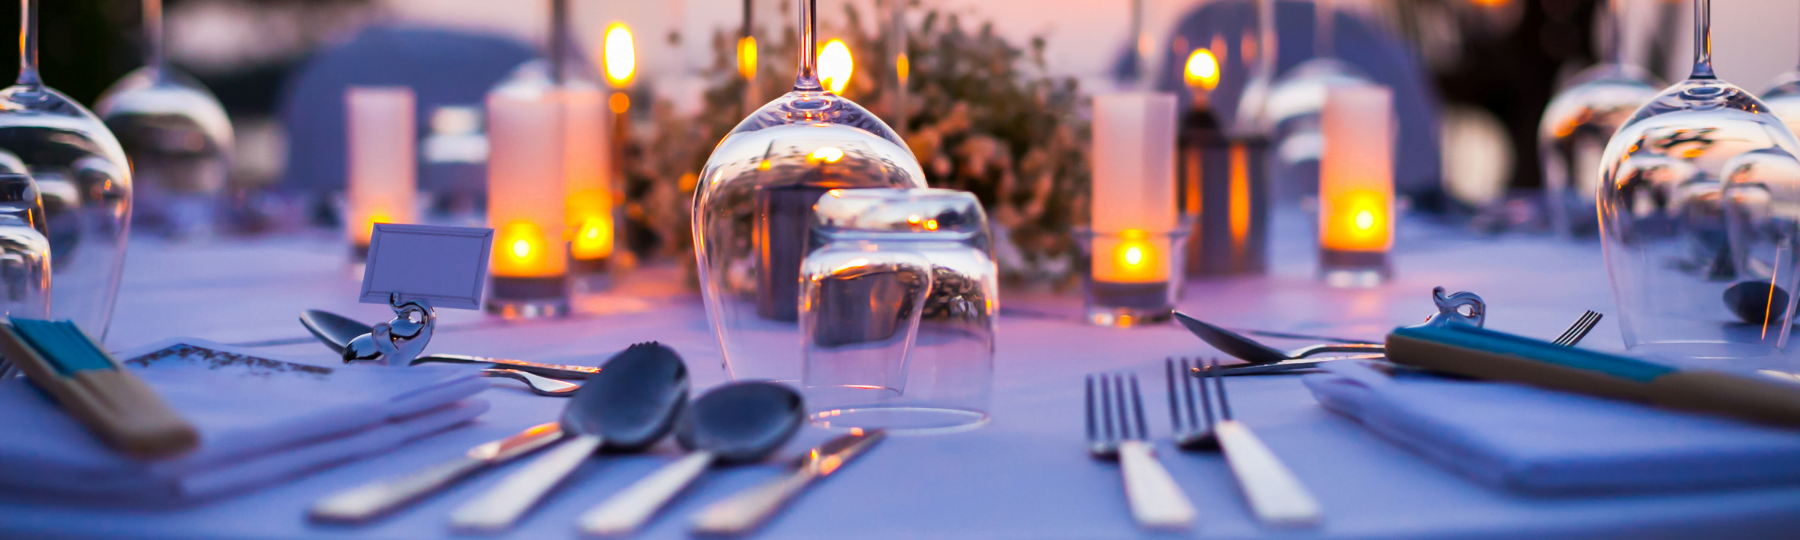 Formal Dinner Parties Etiquette TipsFormal Dinner Parties: 8 Simple Tips